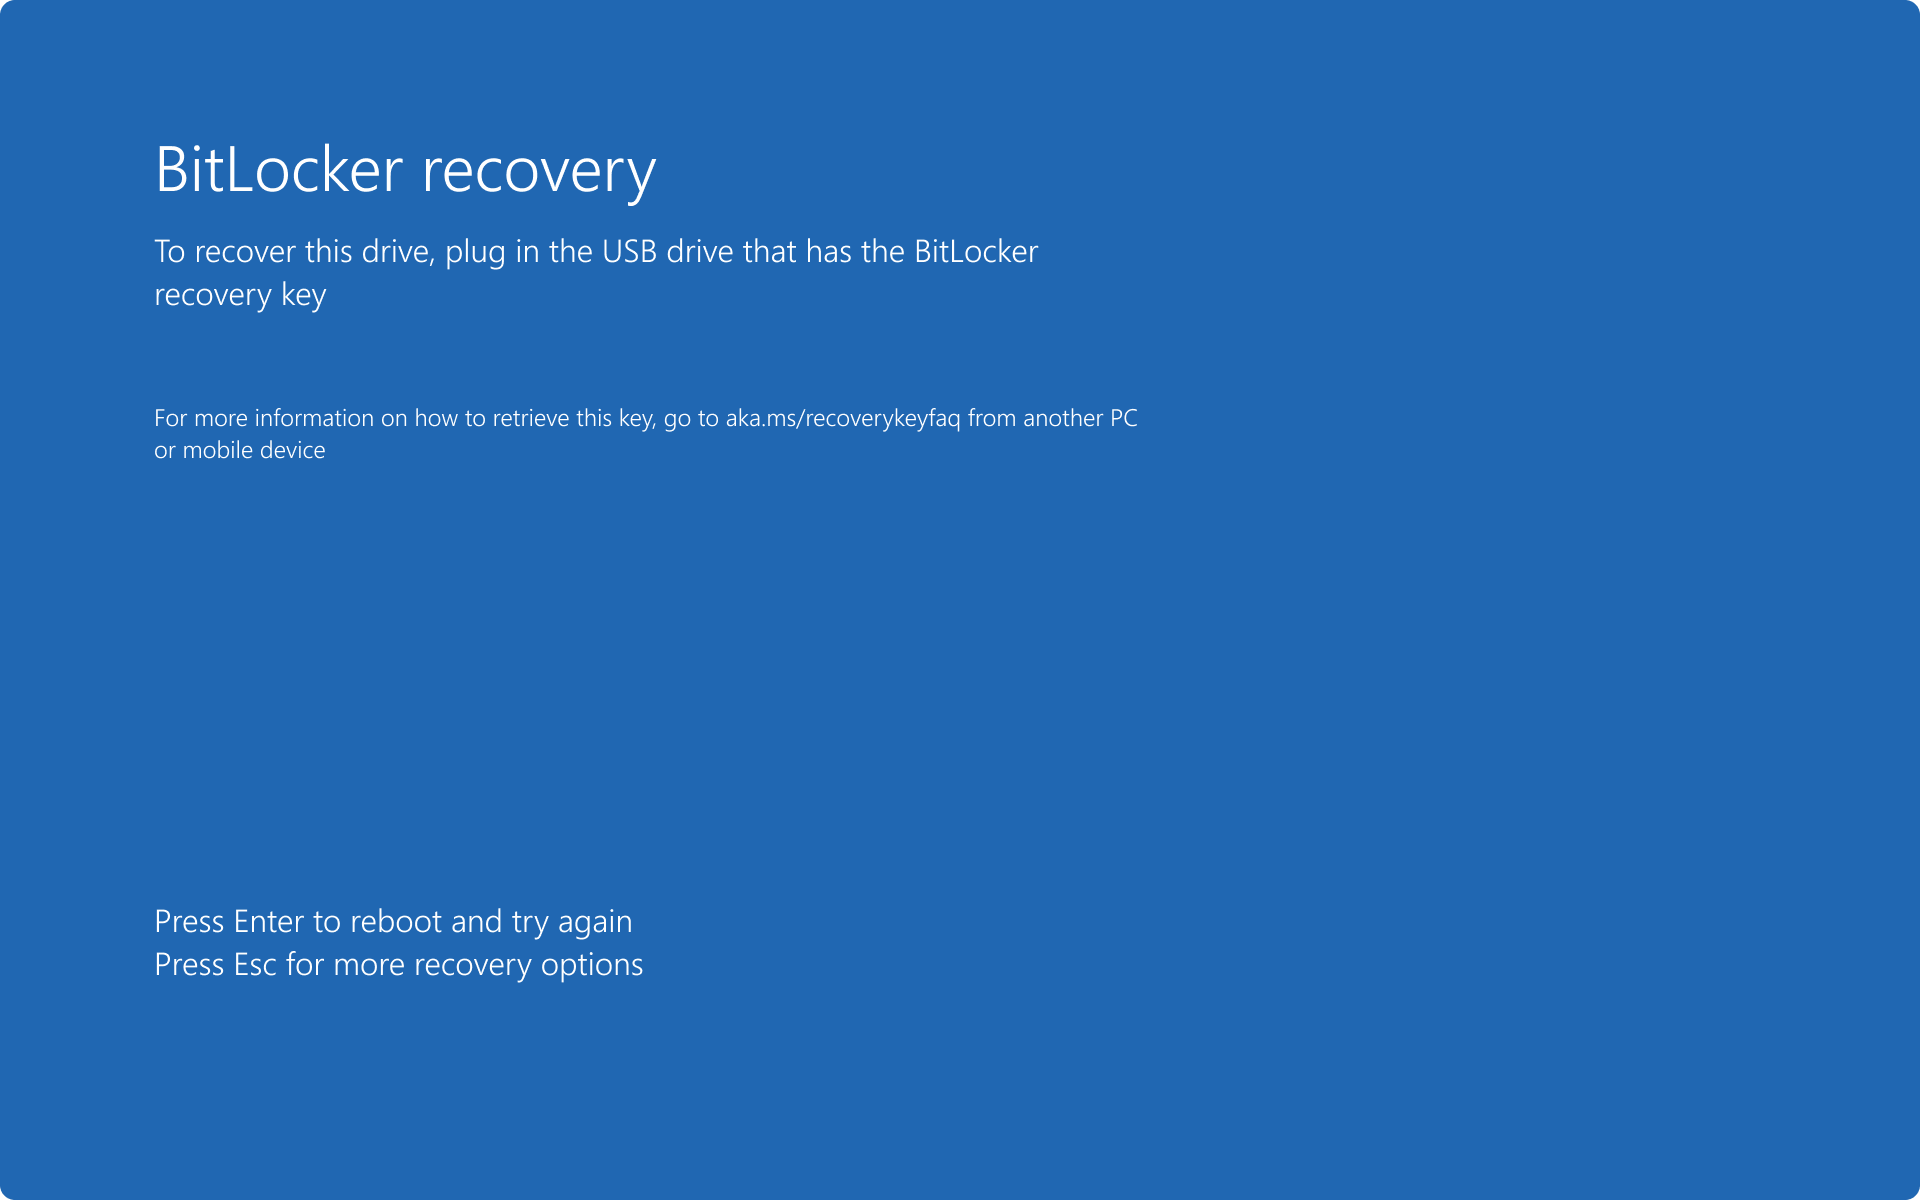 Снимок экрана: экран восстановления BitLocker с запросом на подключение USB-накопителя с помощью ключа восстановления.